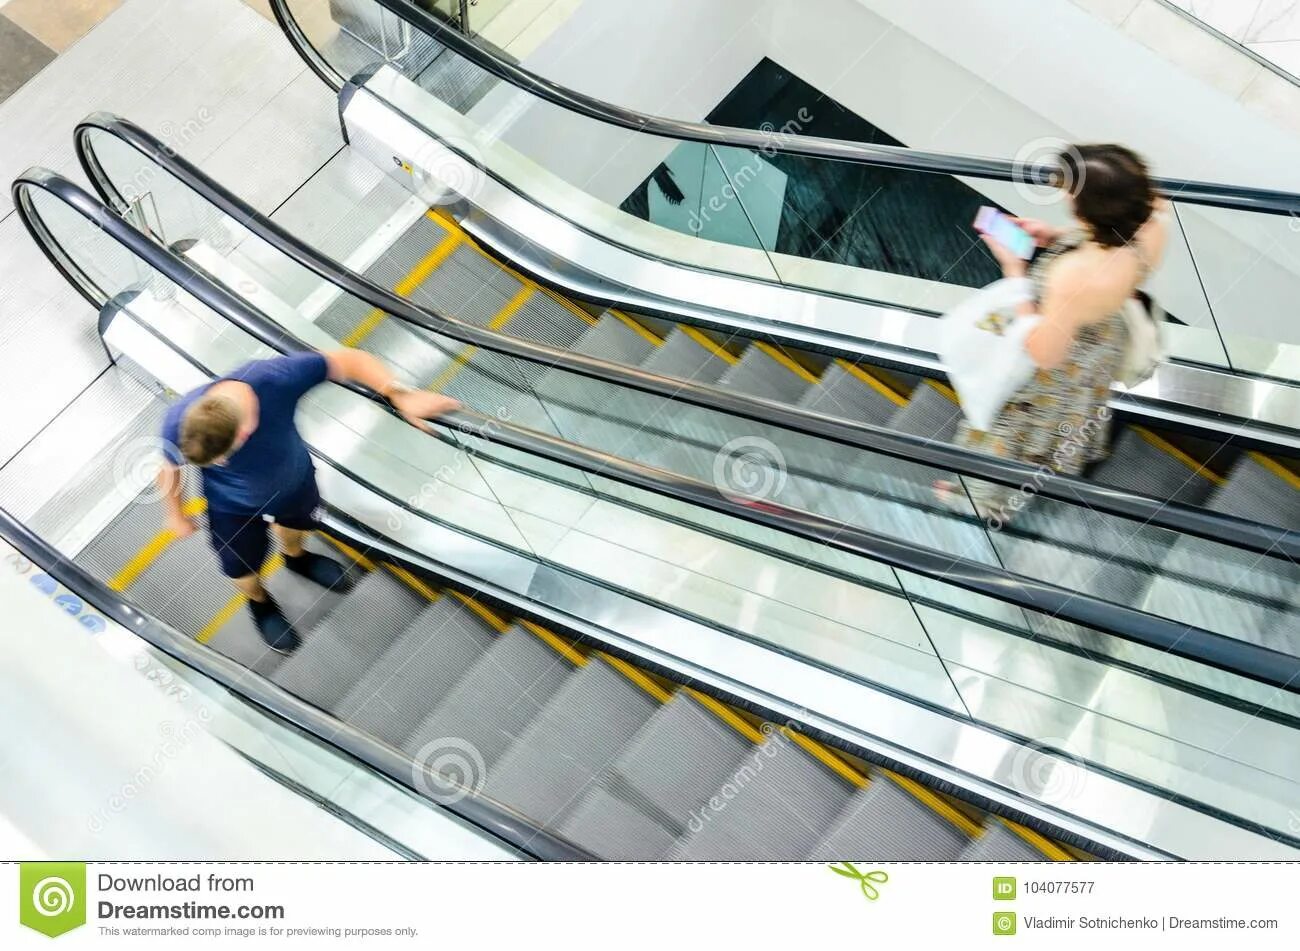 Сколько времени он был на эскалаторе. Dubai Mall эскалатор. Люди на эскалаторе. Человек бежит на эскалаторе. Эскалатор в движении.